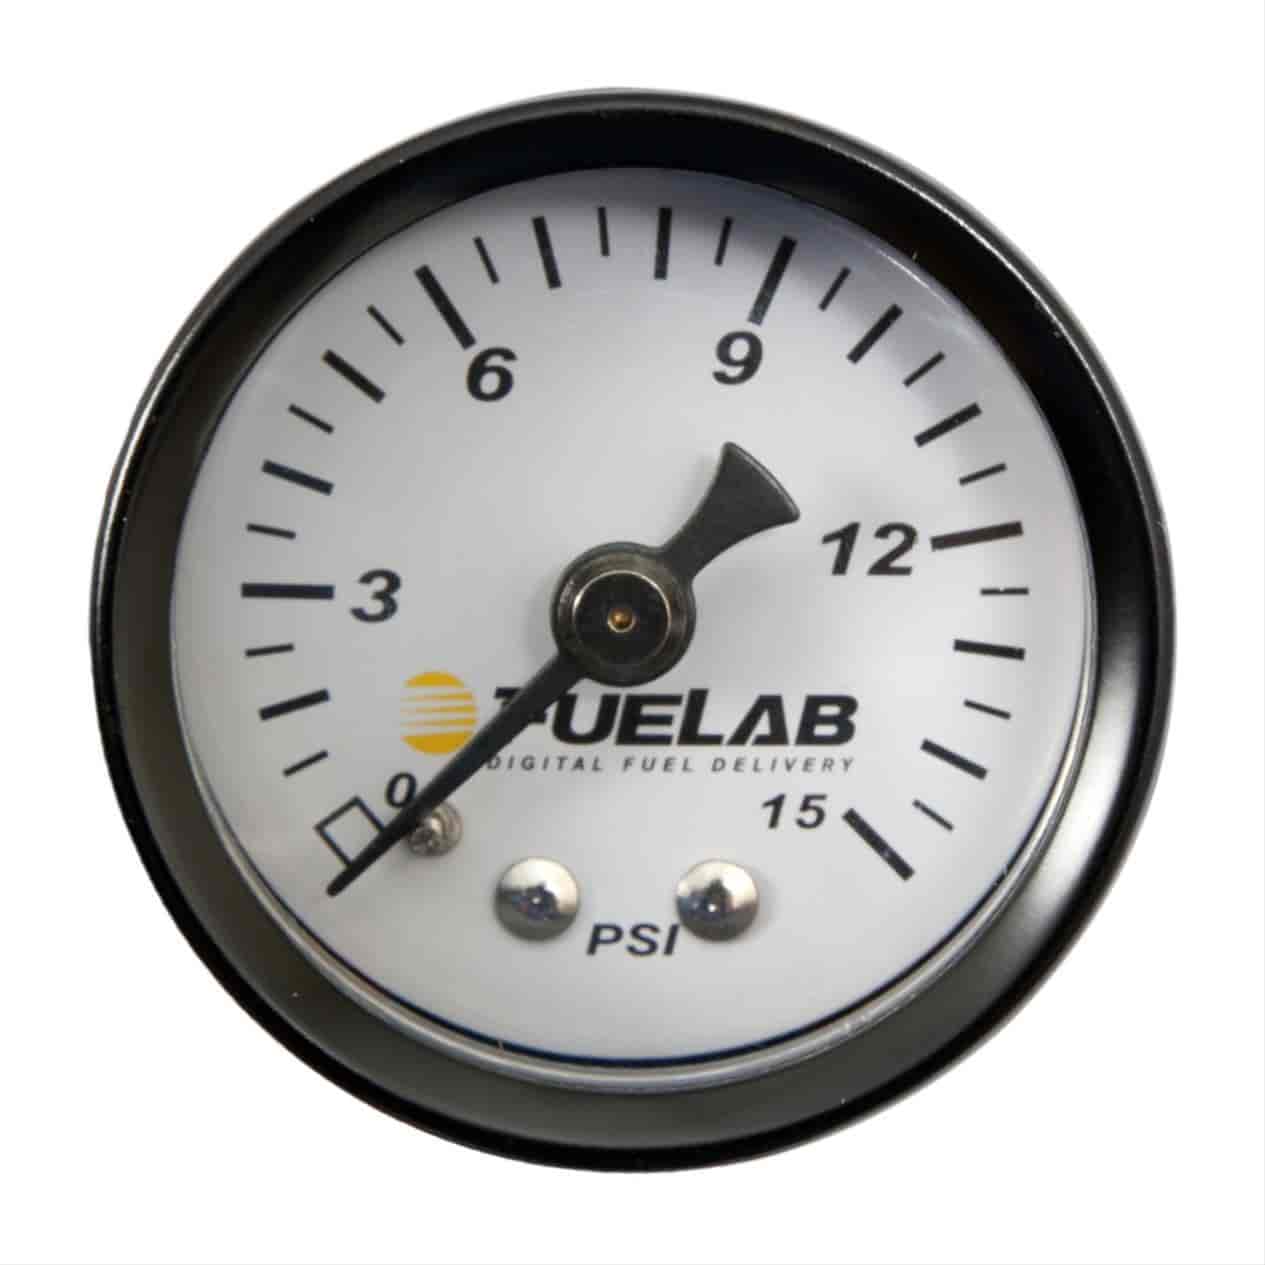 Carbureted Fuel Pressure Gauge 1.5"